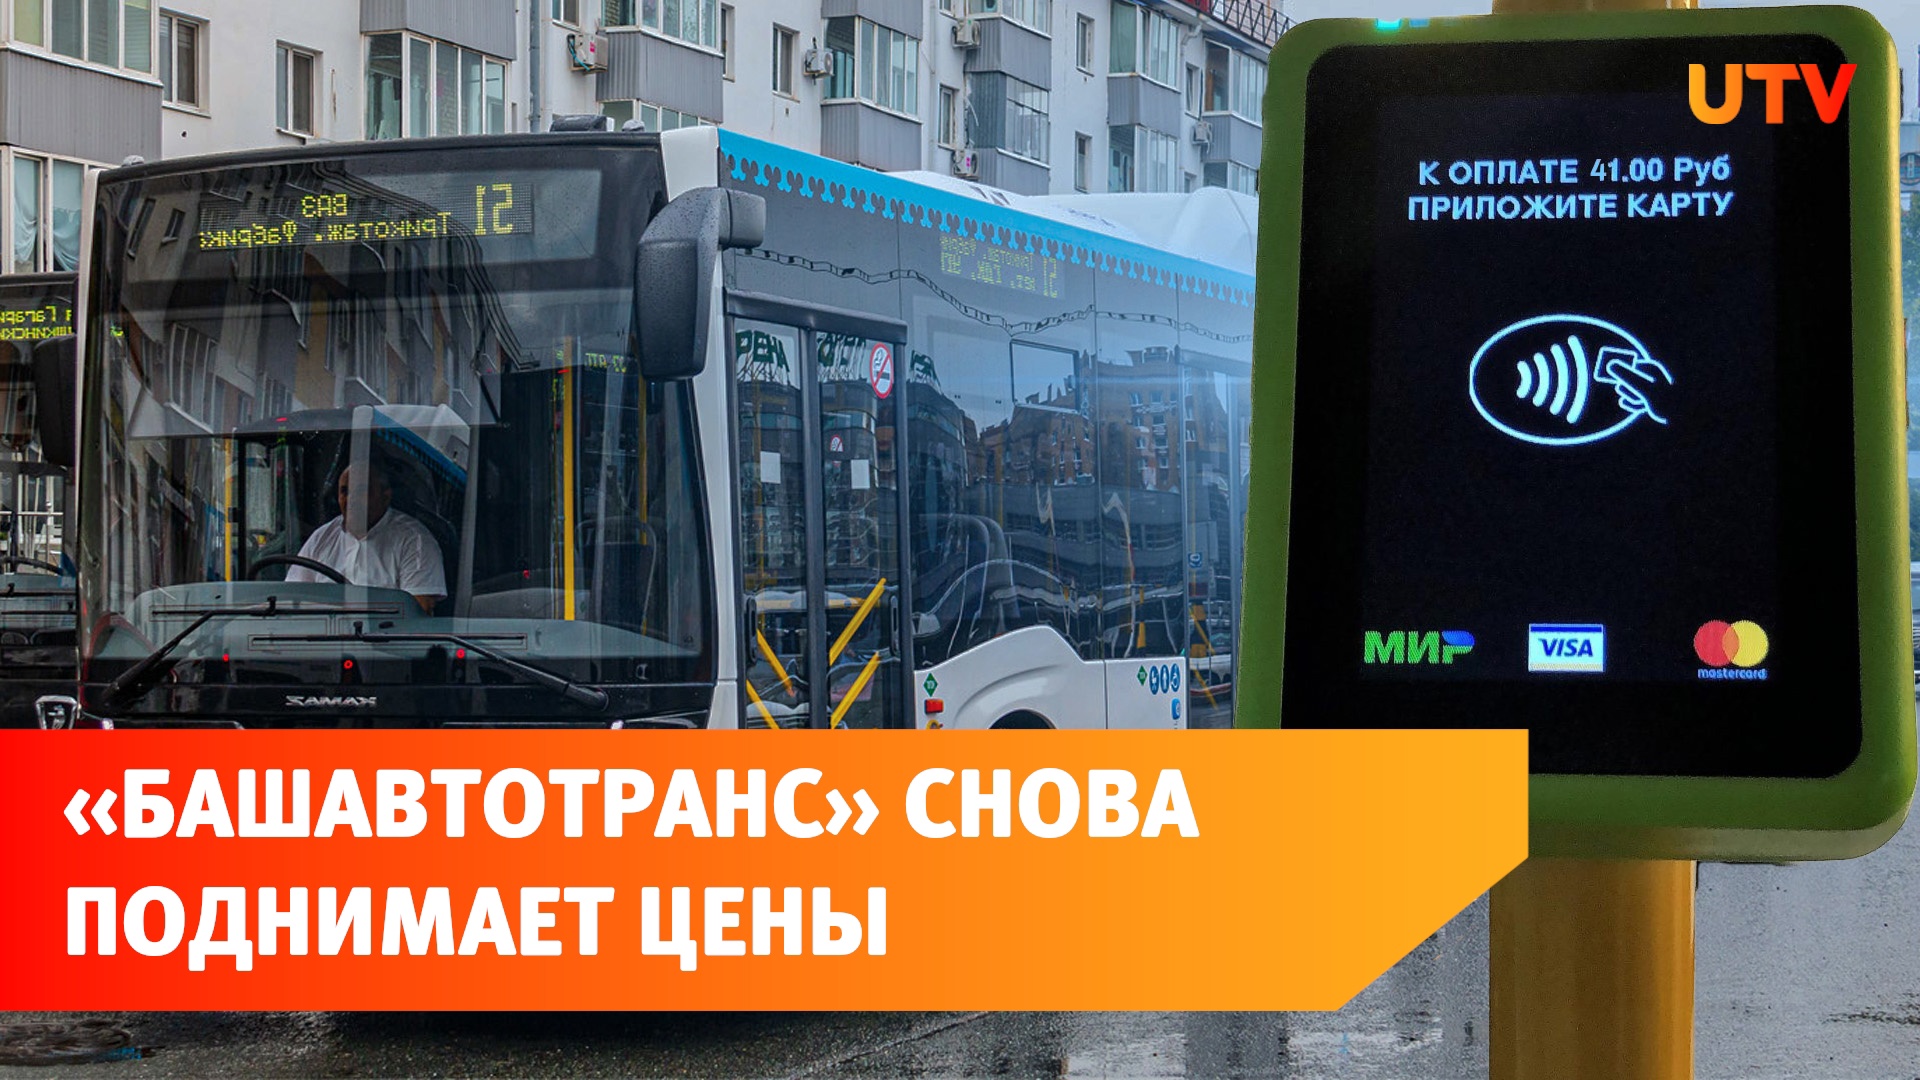 В Уфе стоимость проезда на автобусе вырастет до 41 рубля